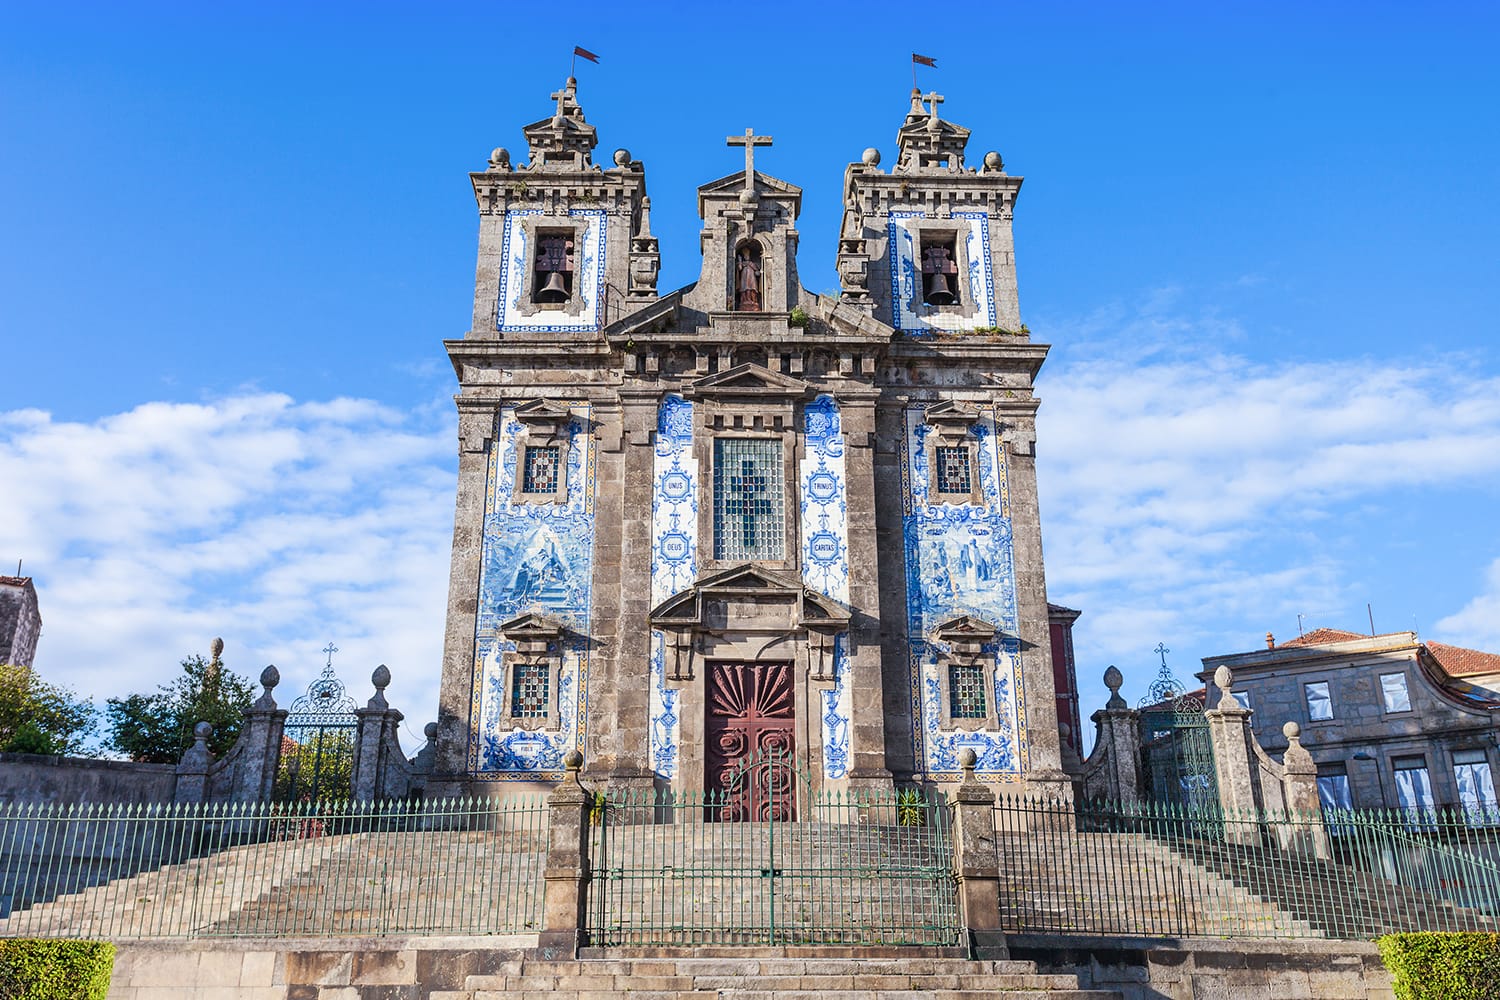 Η εκκλησία του Αγίου Ildefonso (Igreja de Santo Ildefonso) είναι μια εκκλησία του δέκατου όγδοου αιώνα στο Πόρτο της Πορτογαλίας